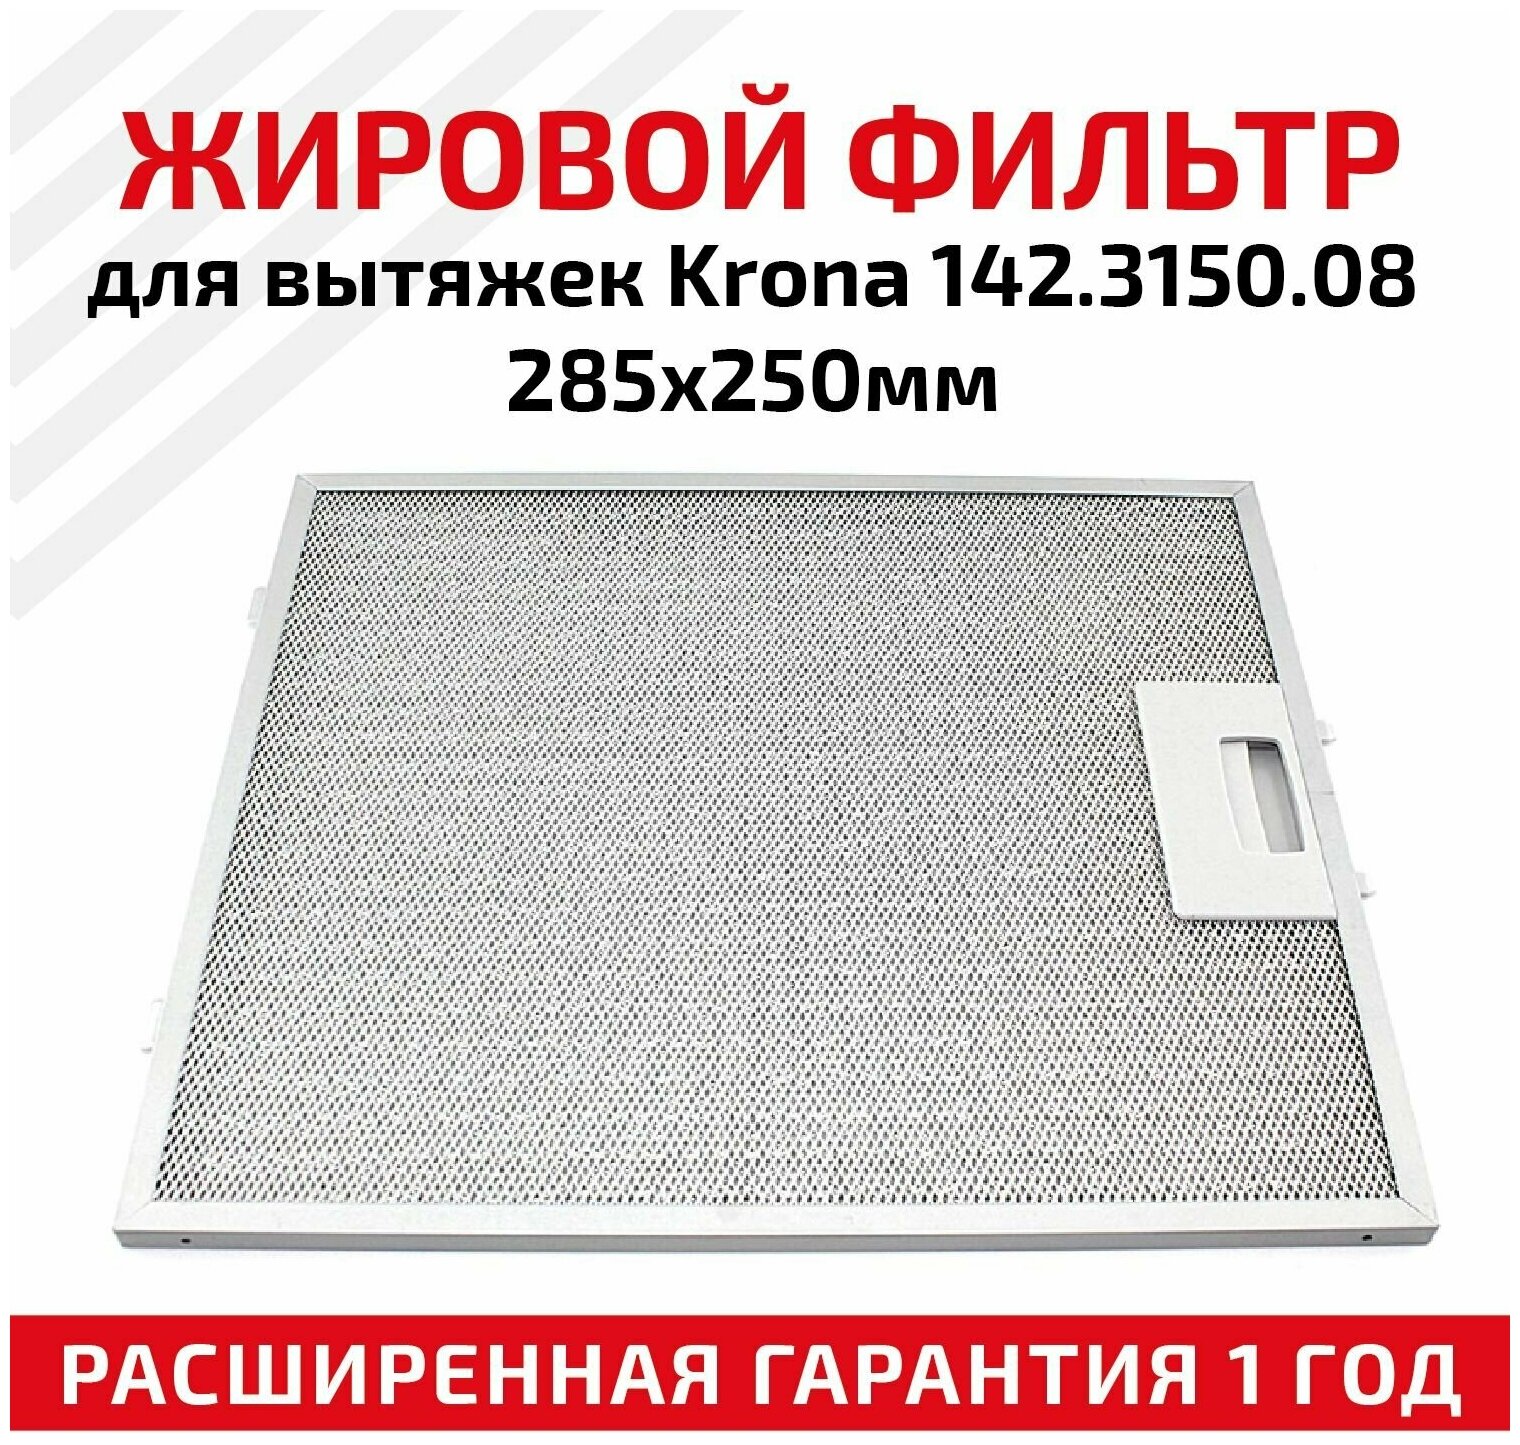 Жировой фильтр (кассета) алюминиевый (металлический) рамочный для вытяжек Krona 142.3150.08, многоразовый, 285х250мм